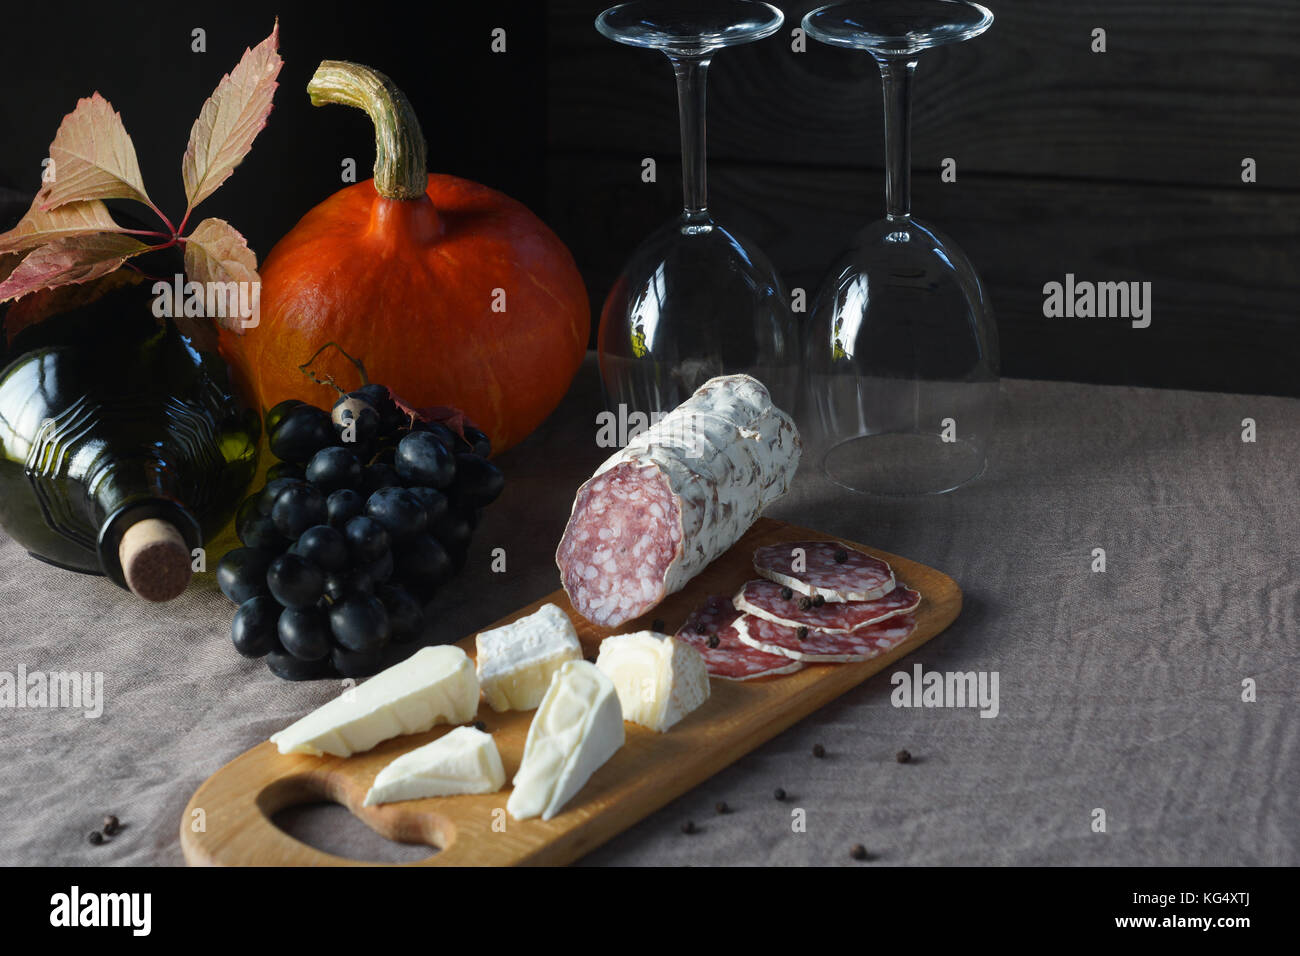 Bodegón de uvas, calabaza, botellas, vasos, quesos y embutidos en la mesa. Foto de stock